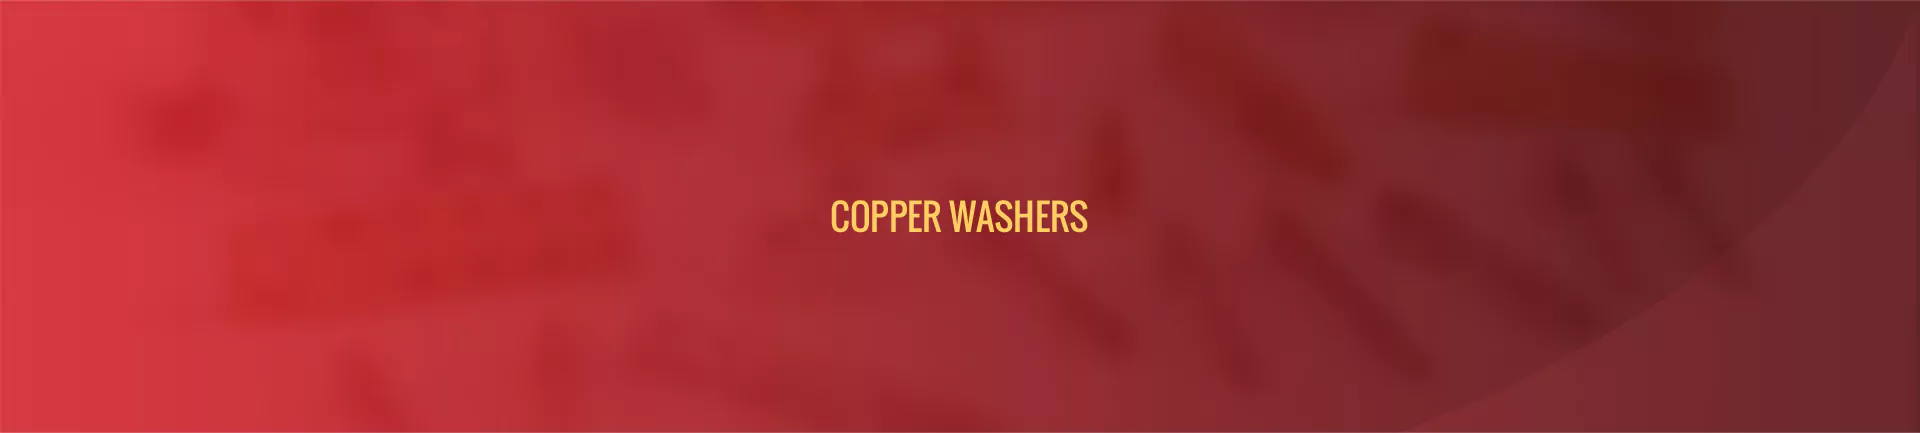 copper-washer-banner